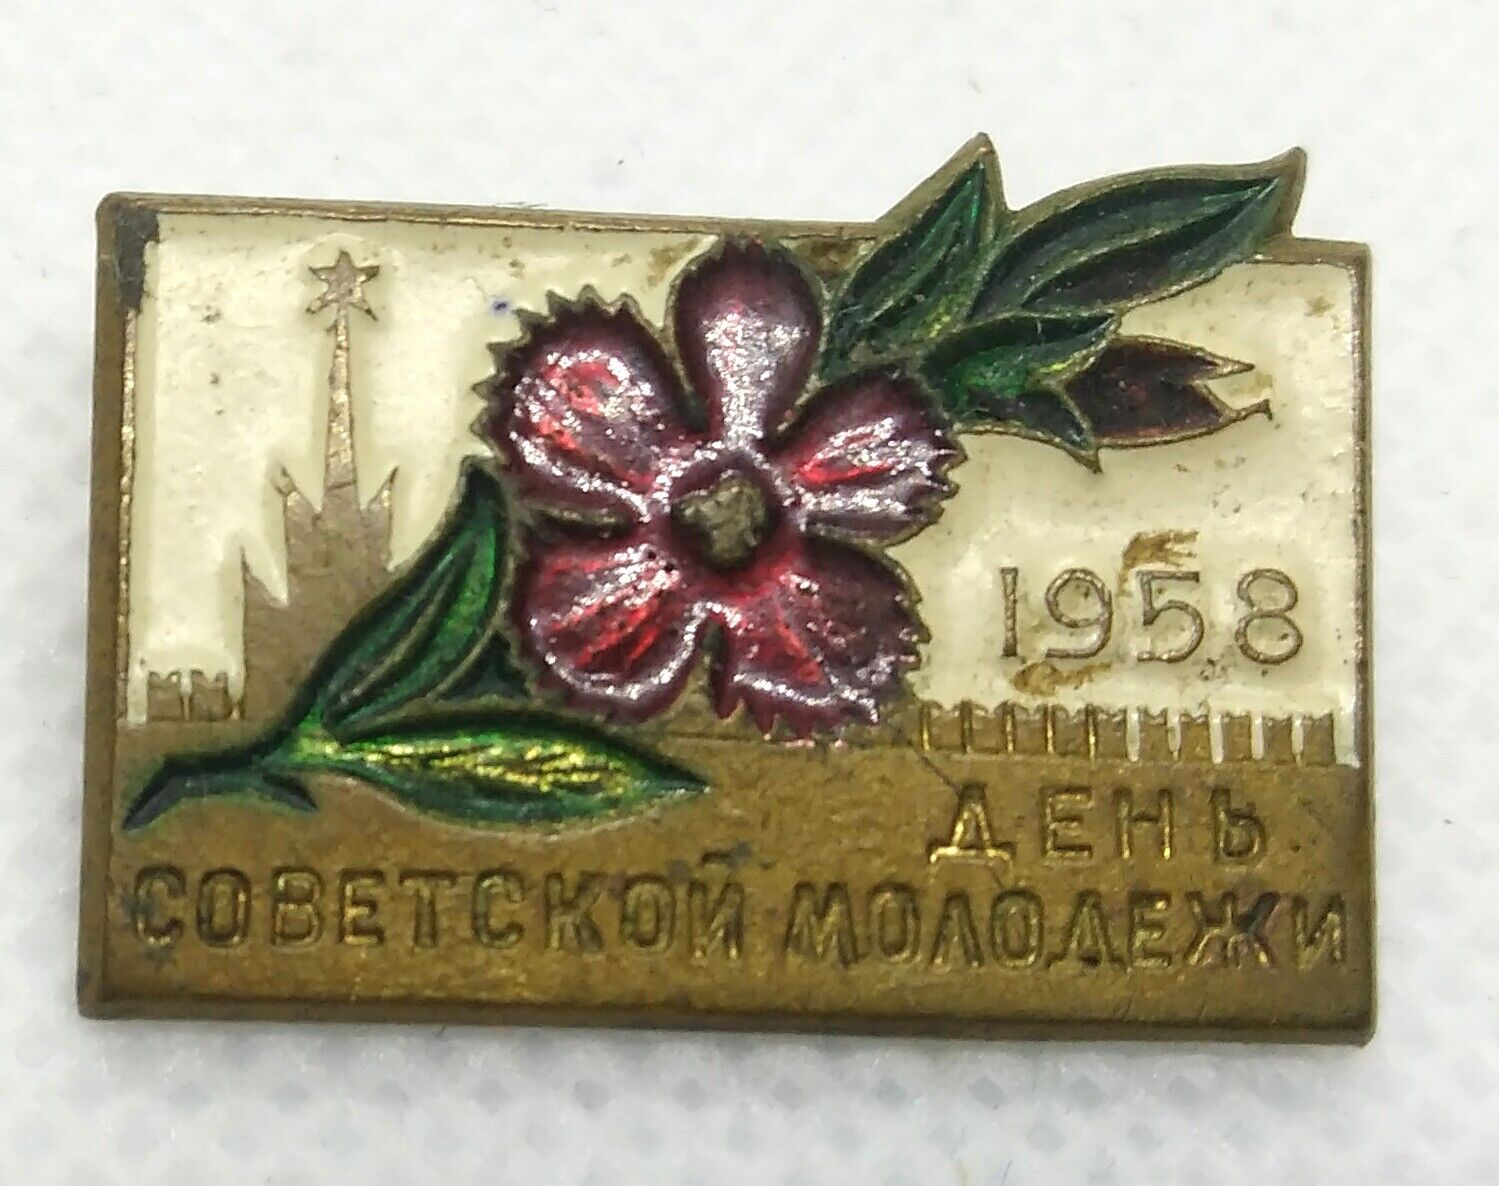 1958 Pin Badge Soviet Youth Day. Russian Rare pin badge.